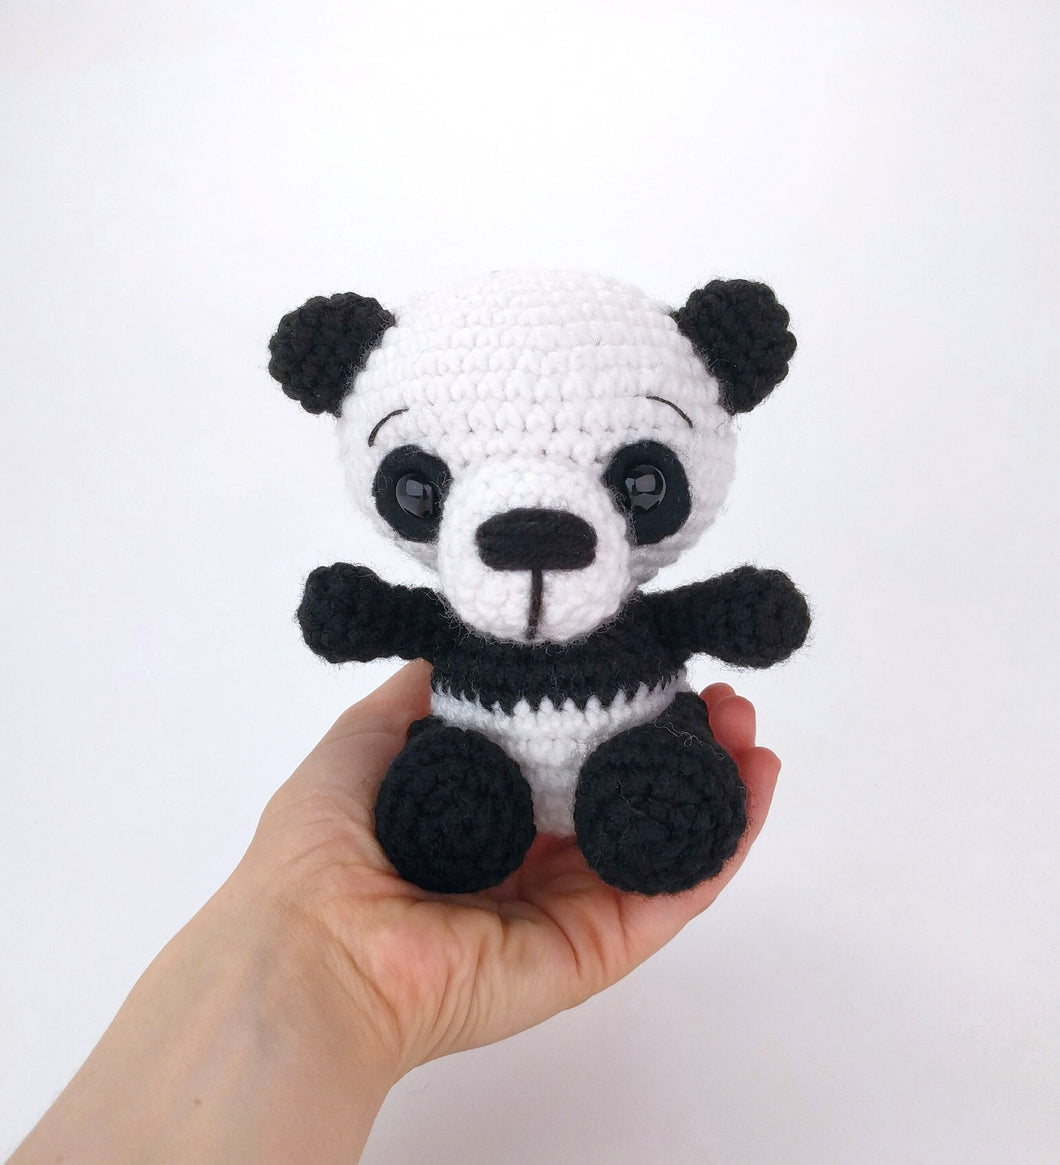 Po-Fu the Panda